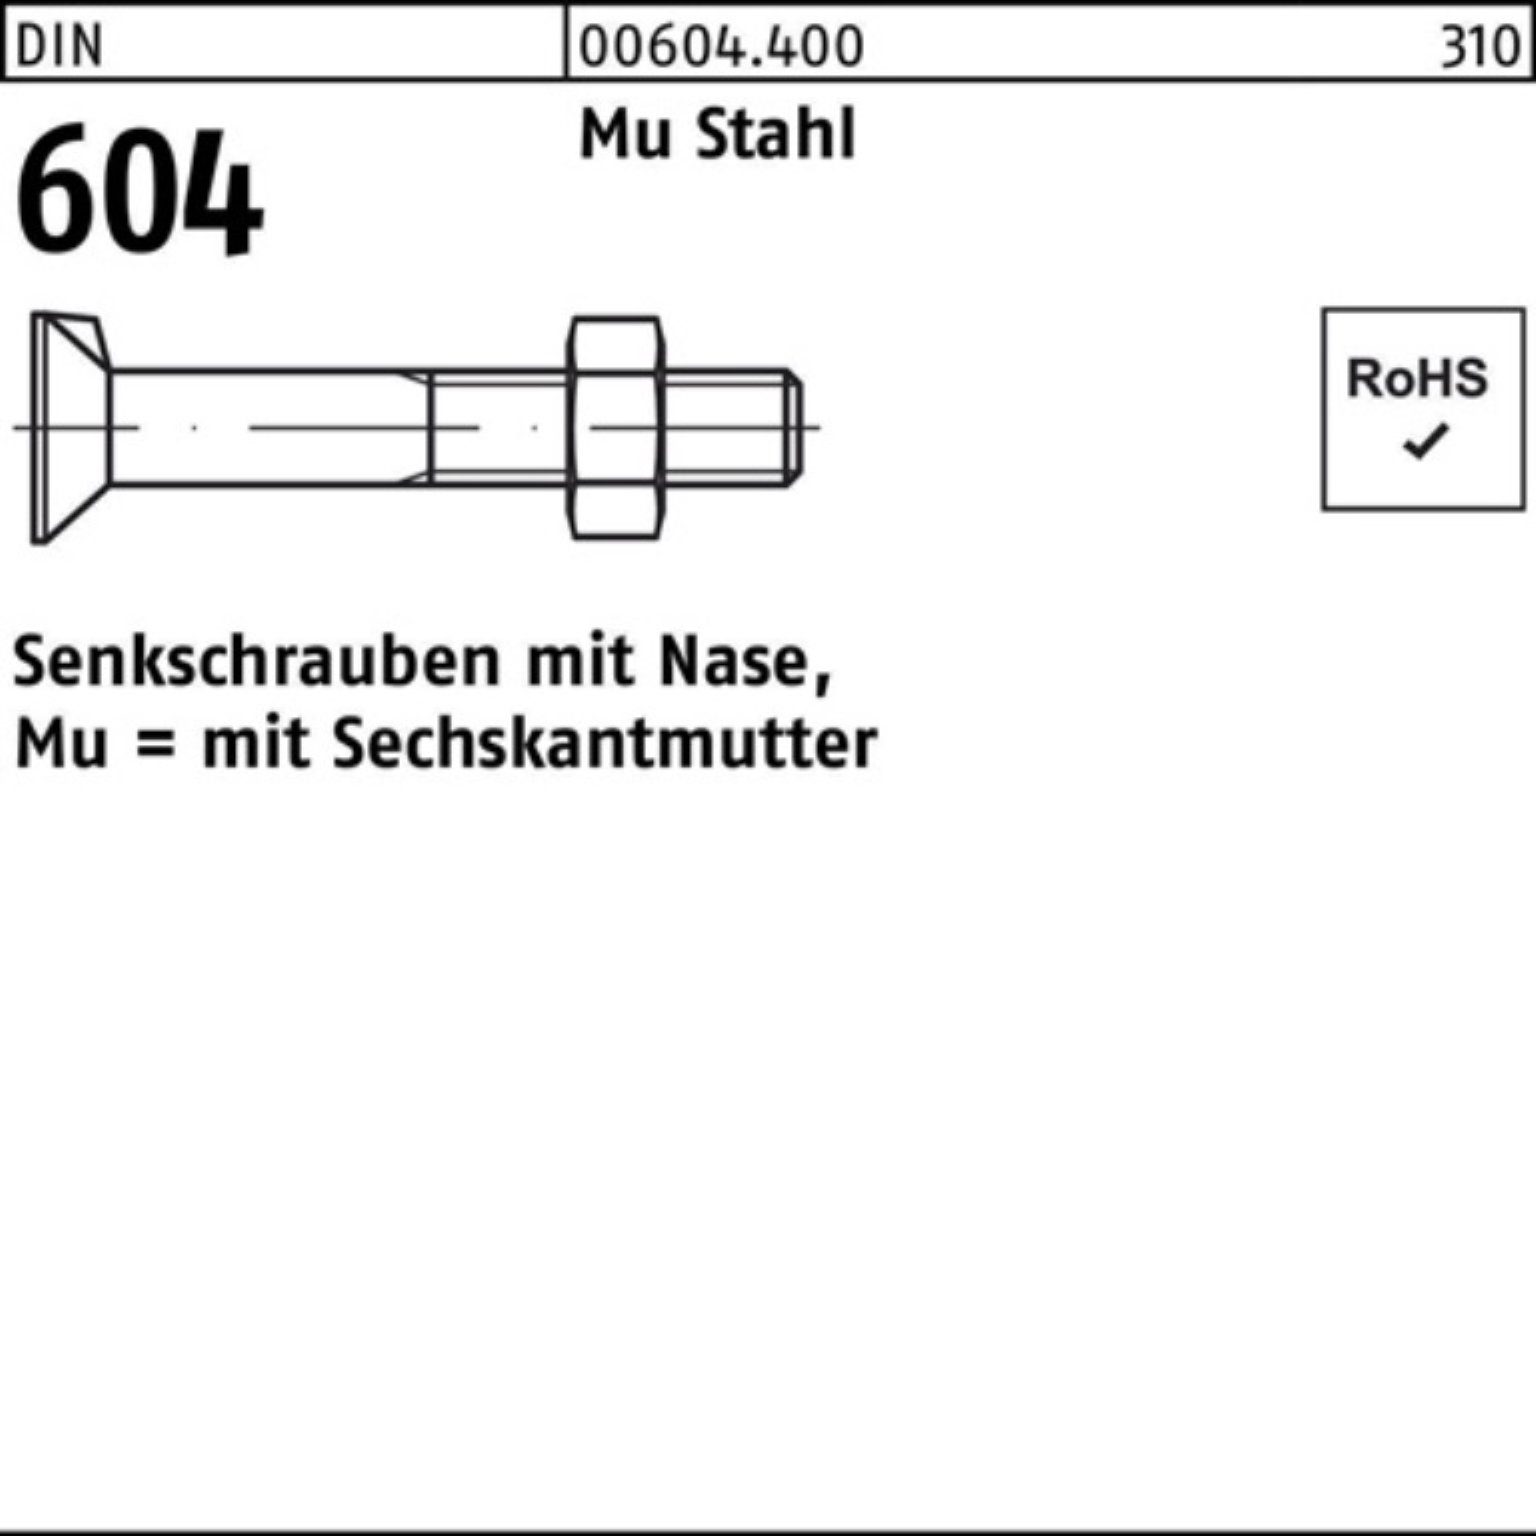 Reyher Senkschraube 100er Pack Senkschraube DIN 604 Nase/6-ktmutter M16x 120 Mu Stahl 4.6